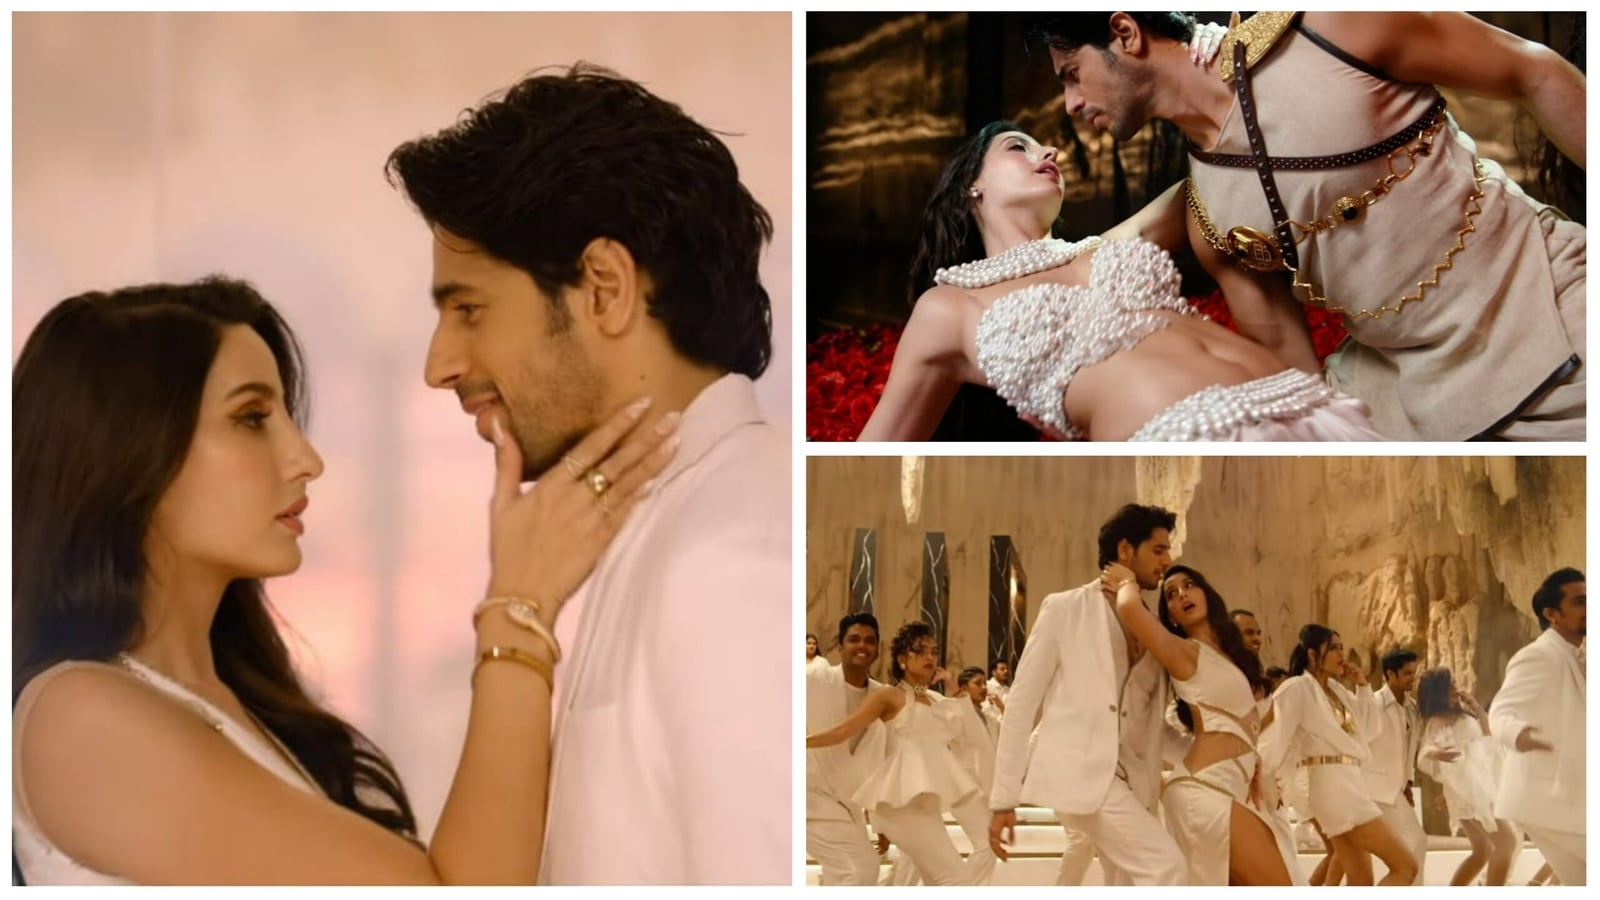 3gp 16 Xxx Video - Thank God song Manike: Nora Fatehi seduces a mesmerised Sidharth Malhotra.  Watch | Bollywood - Hindustan Times